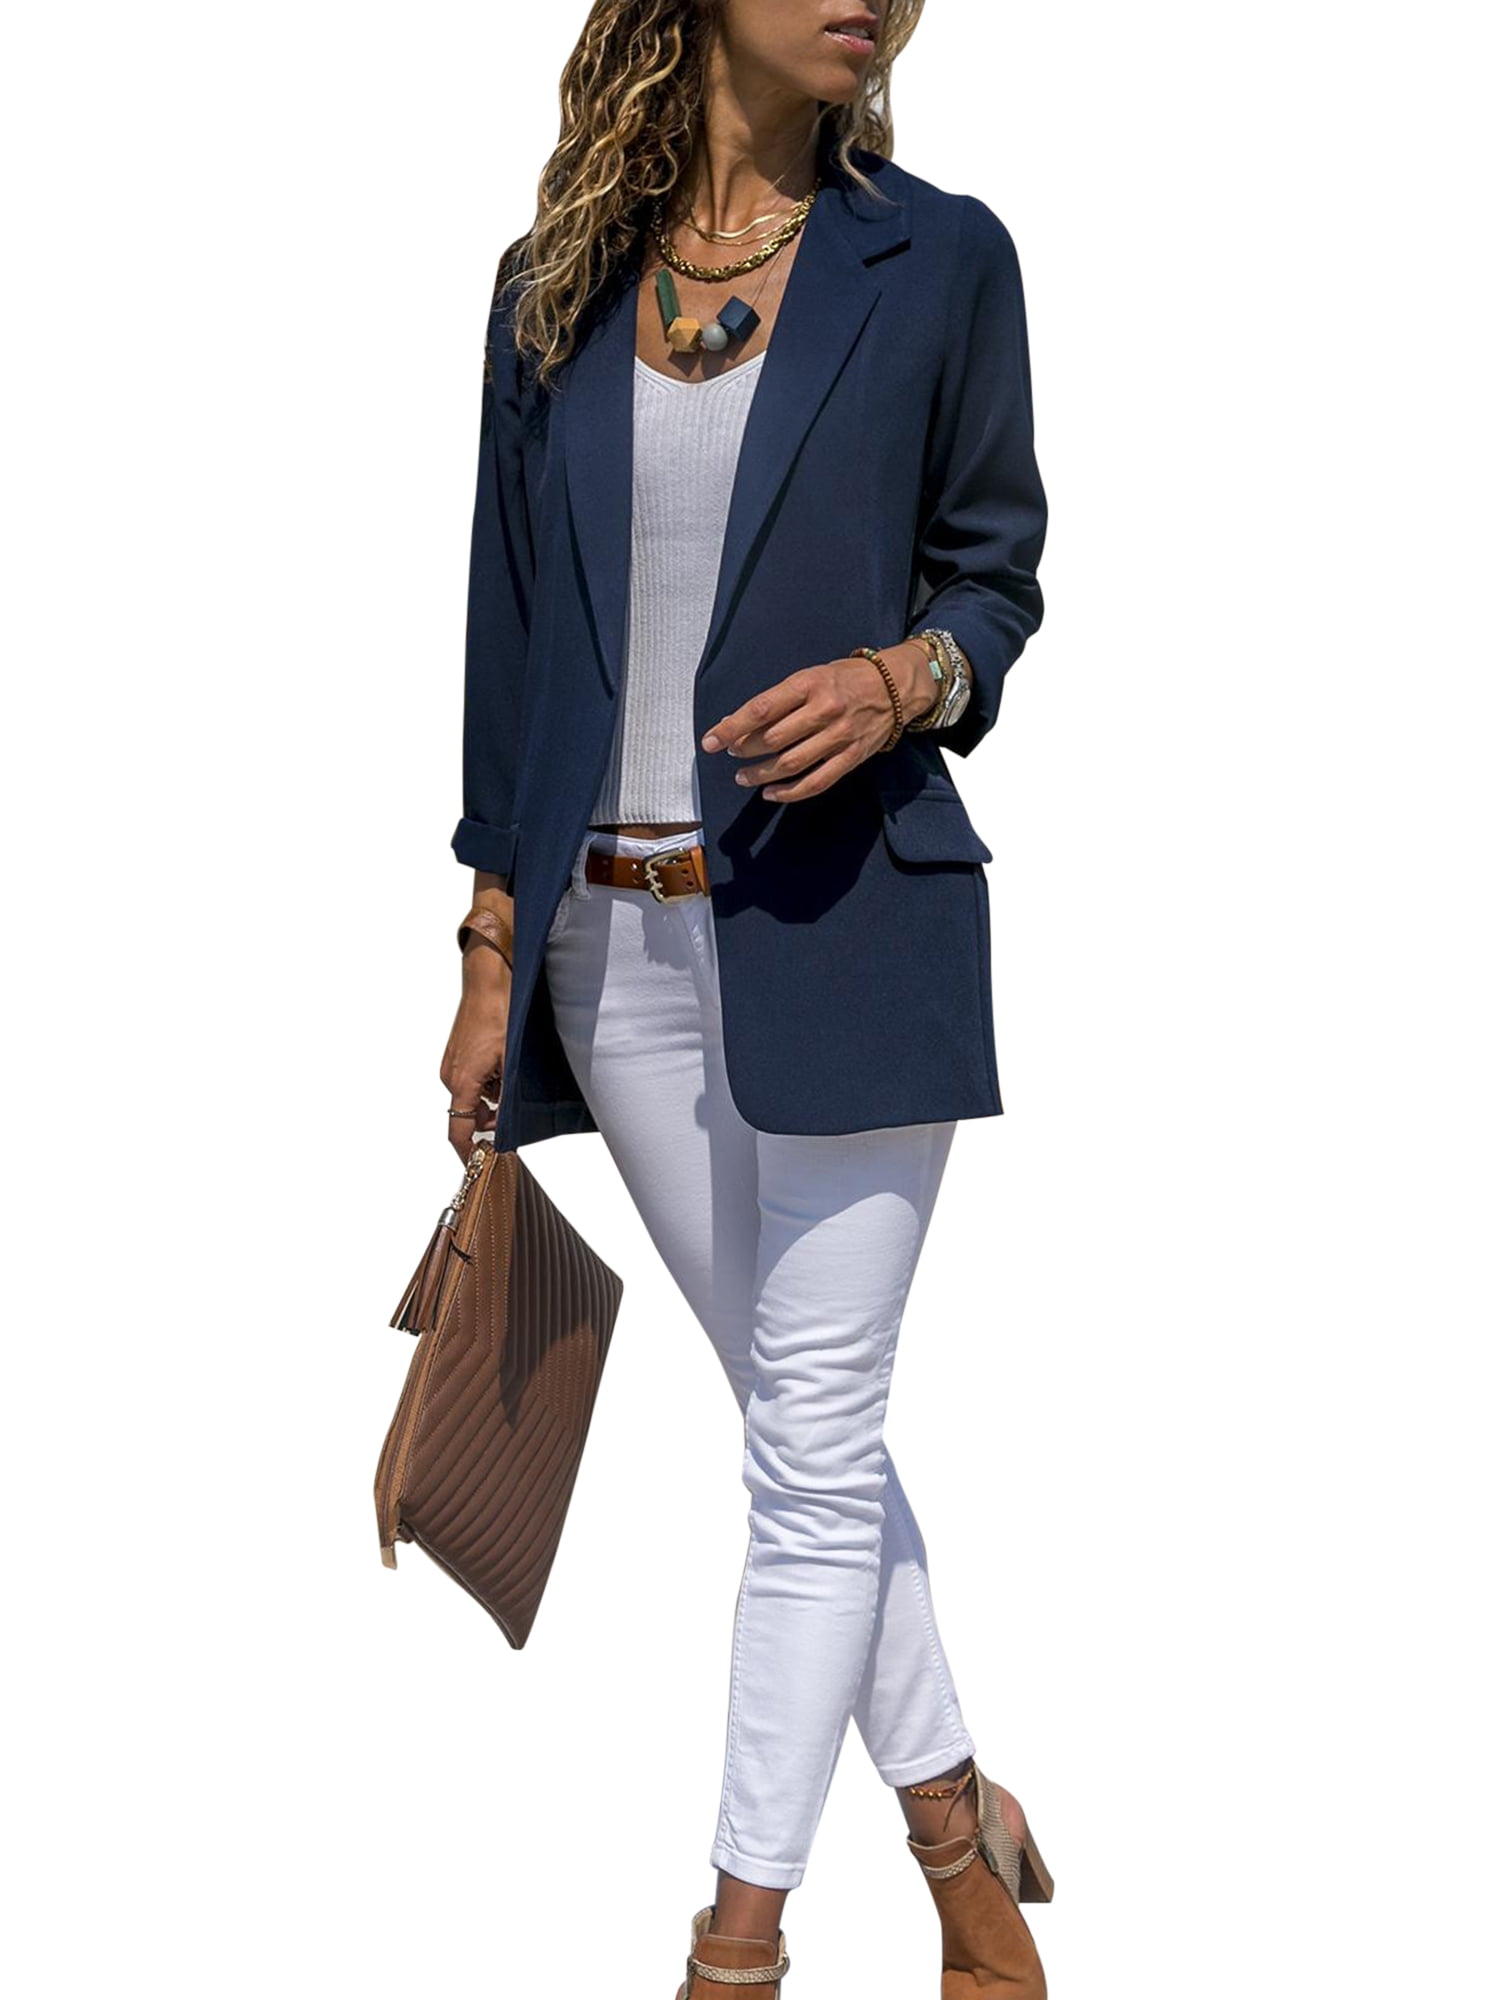 Womens Vintage Long Sleeve Blazer Work Jacket Formal Suit Ladies Plaid Slim Coat